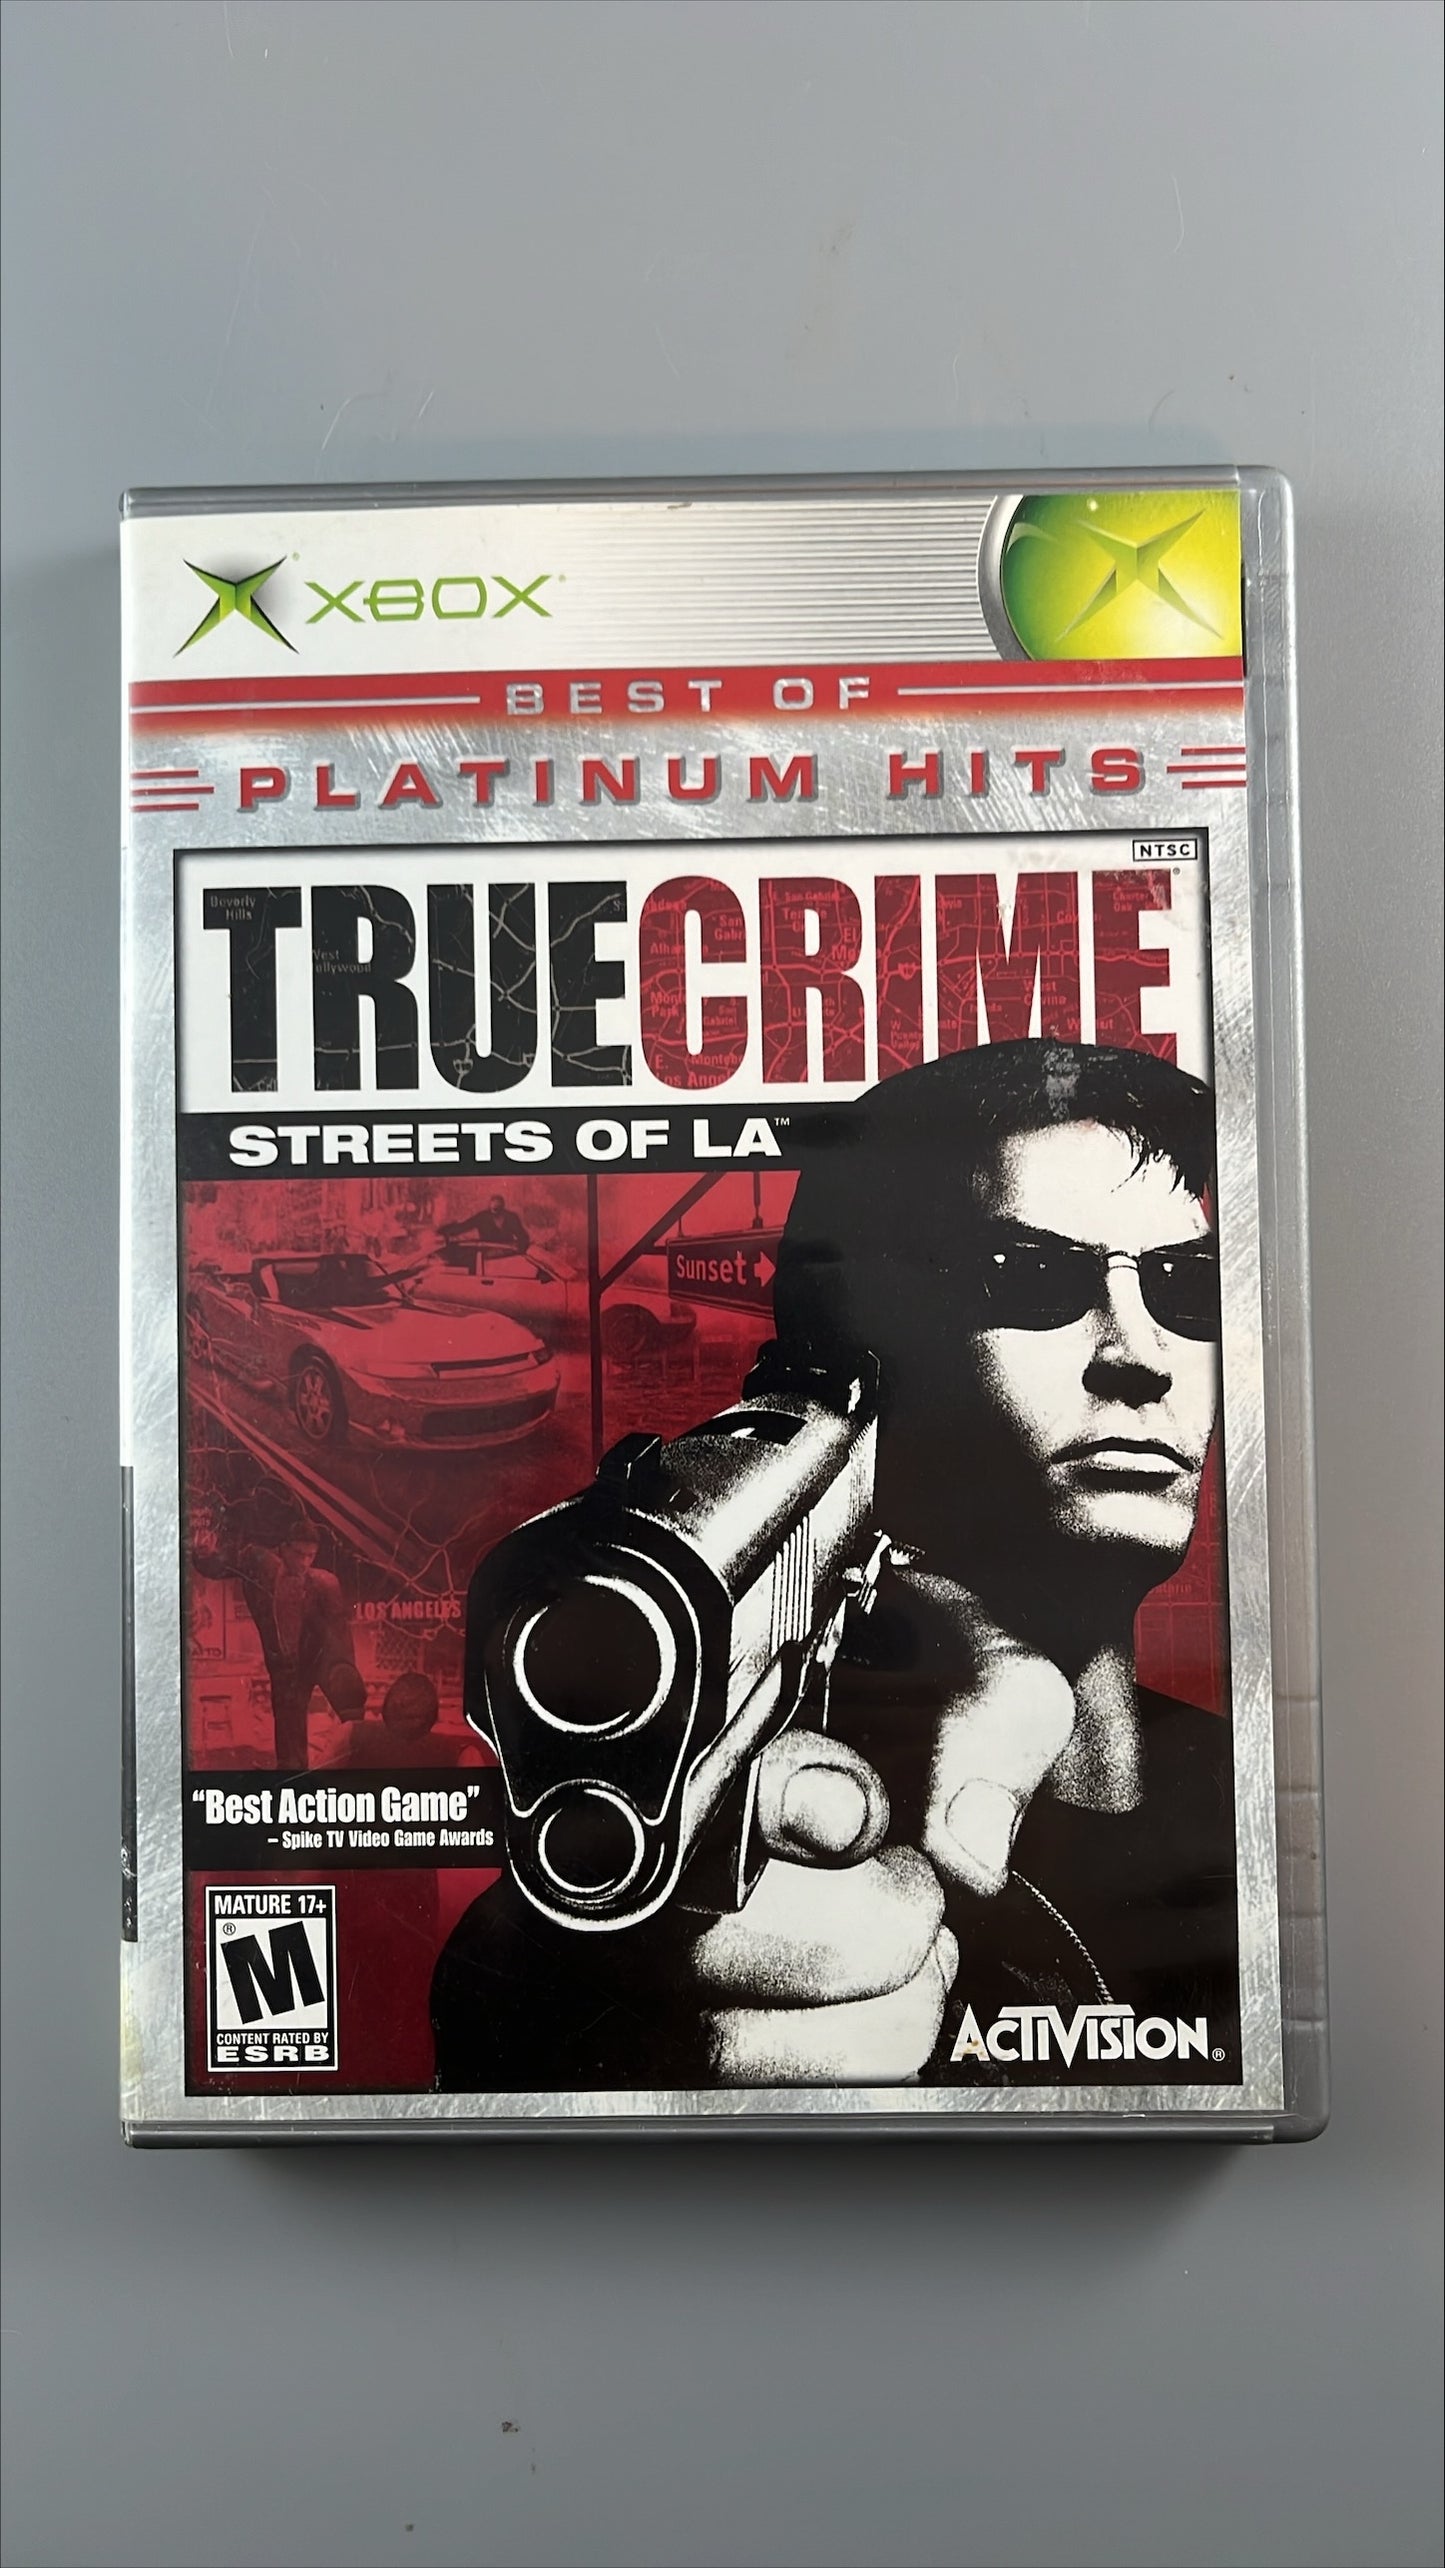 True Crime: Streets of LA (Platinum Hits)